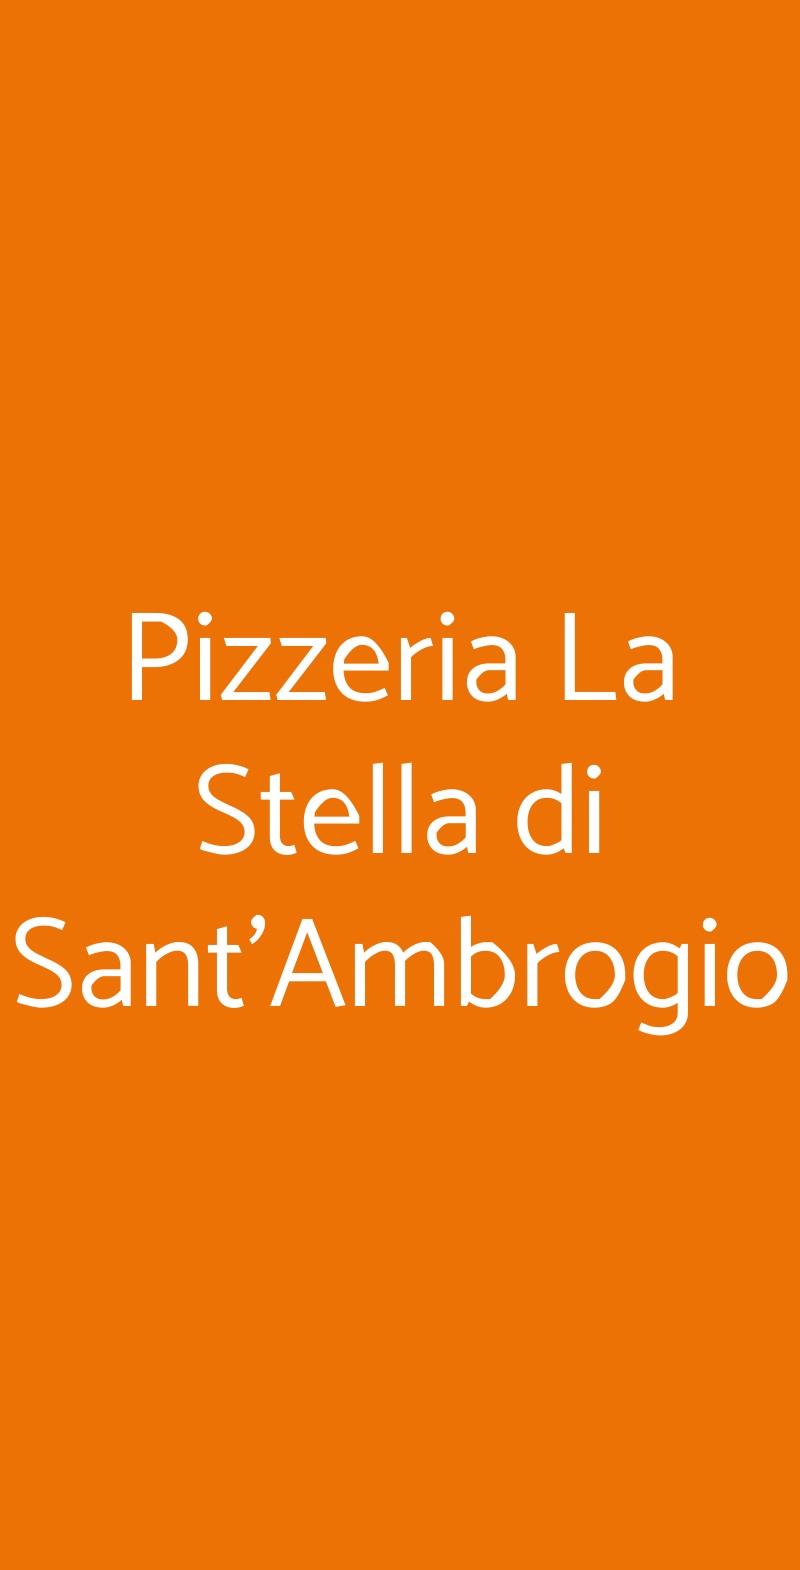 Pizzeria La Stella di Sant'Ambrogio Varese menù 1 pagina